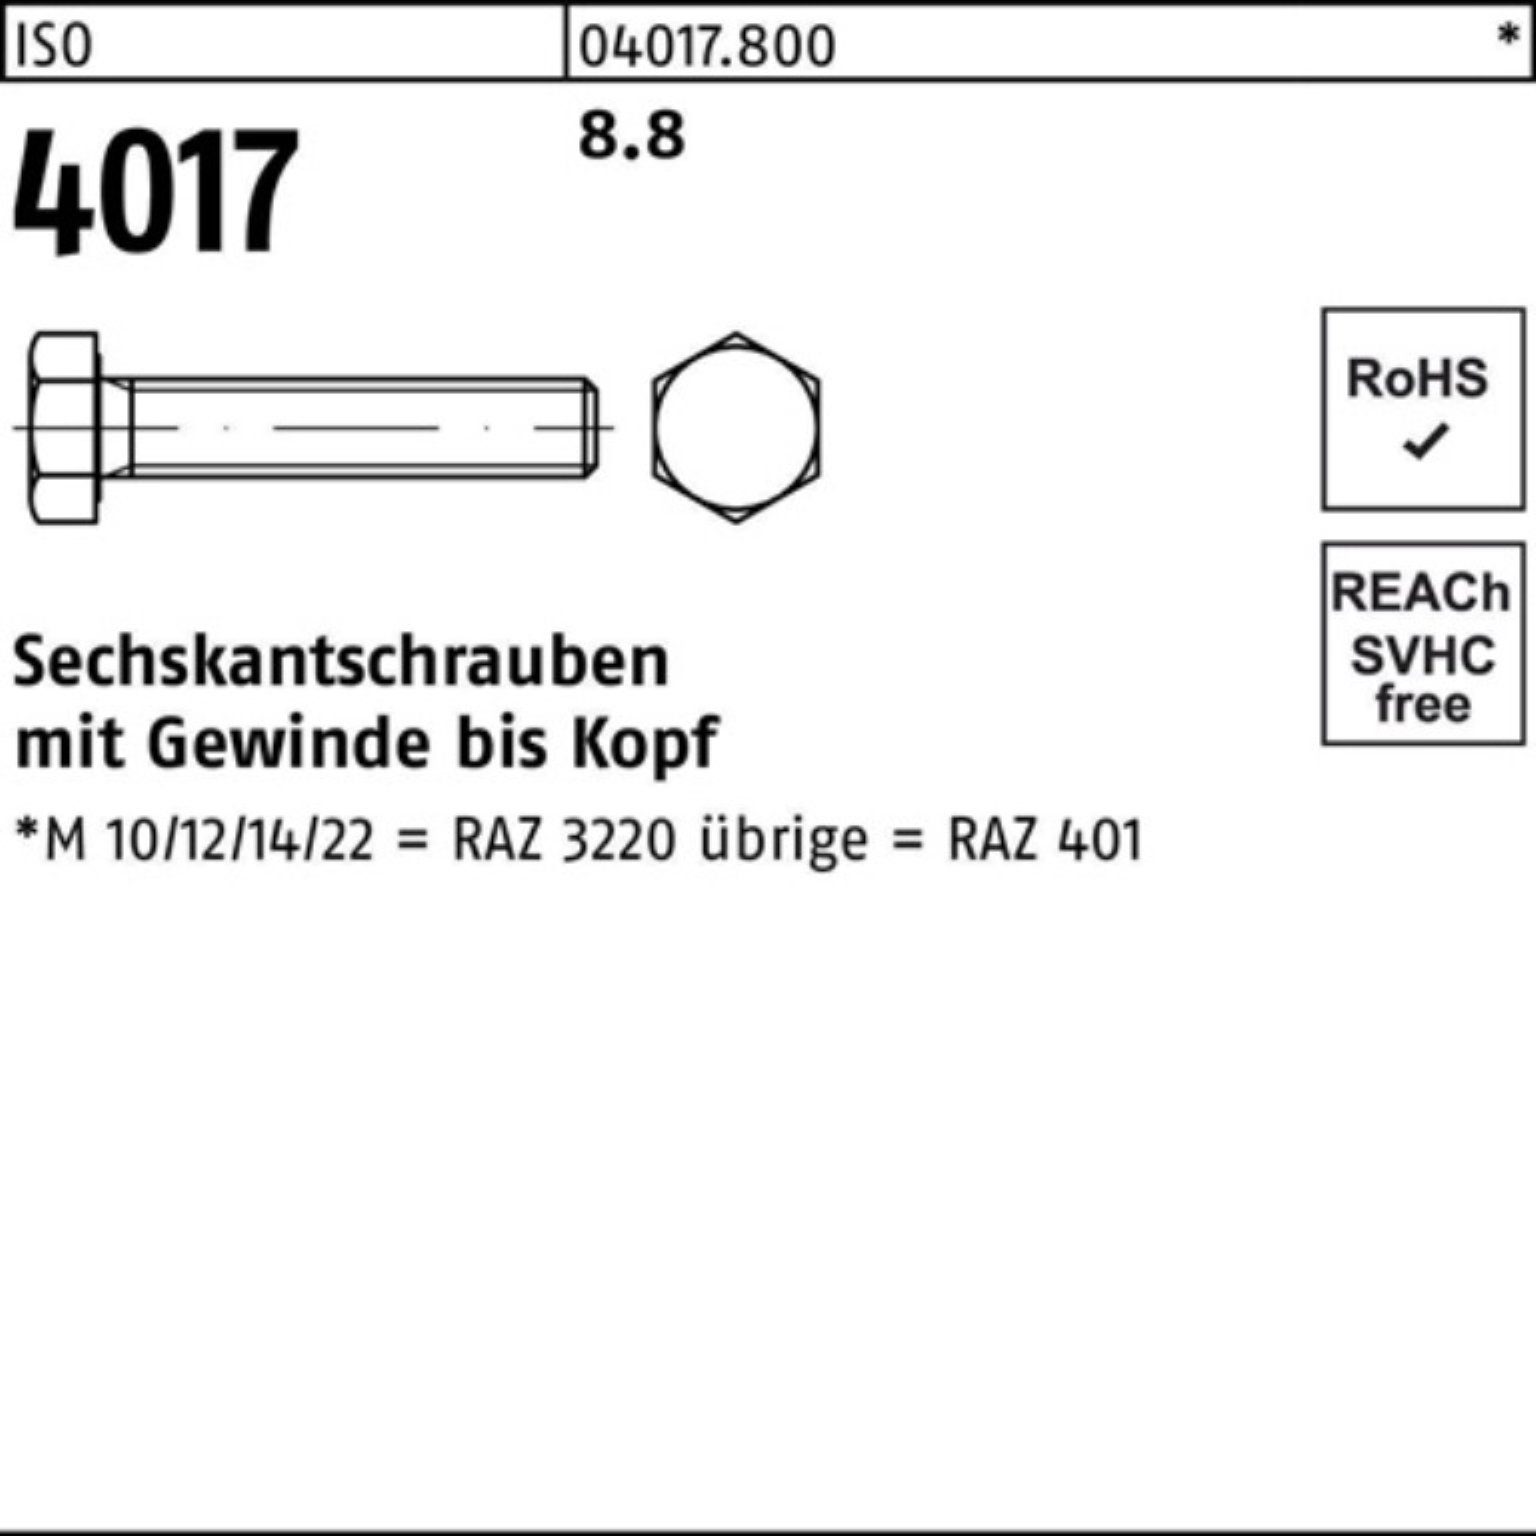 Sechskantschraube 170 M10x 100er 50 ISO Bufab 8.8 40 Stück VG 4017 Sechskantschraube ISO Pack